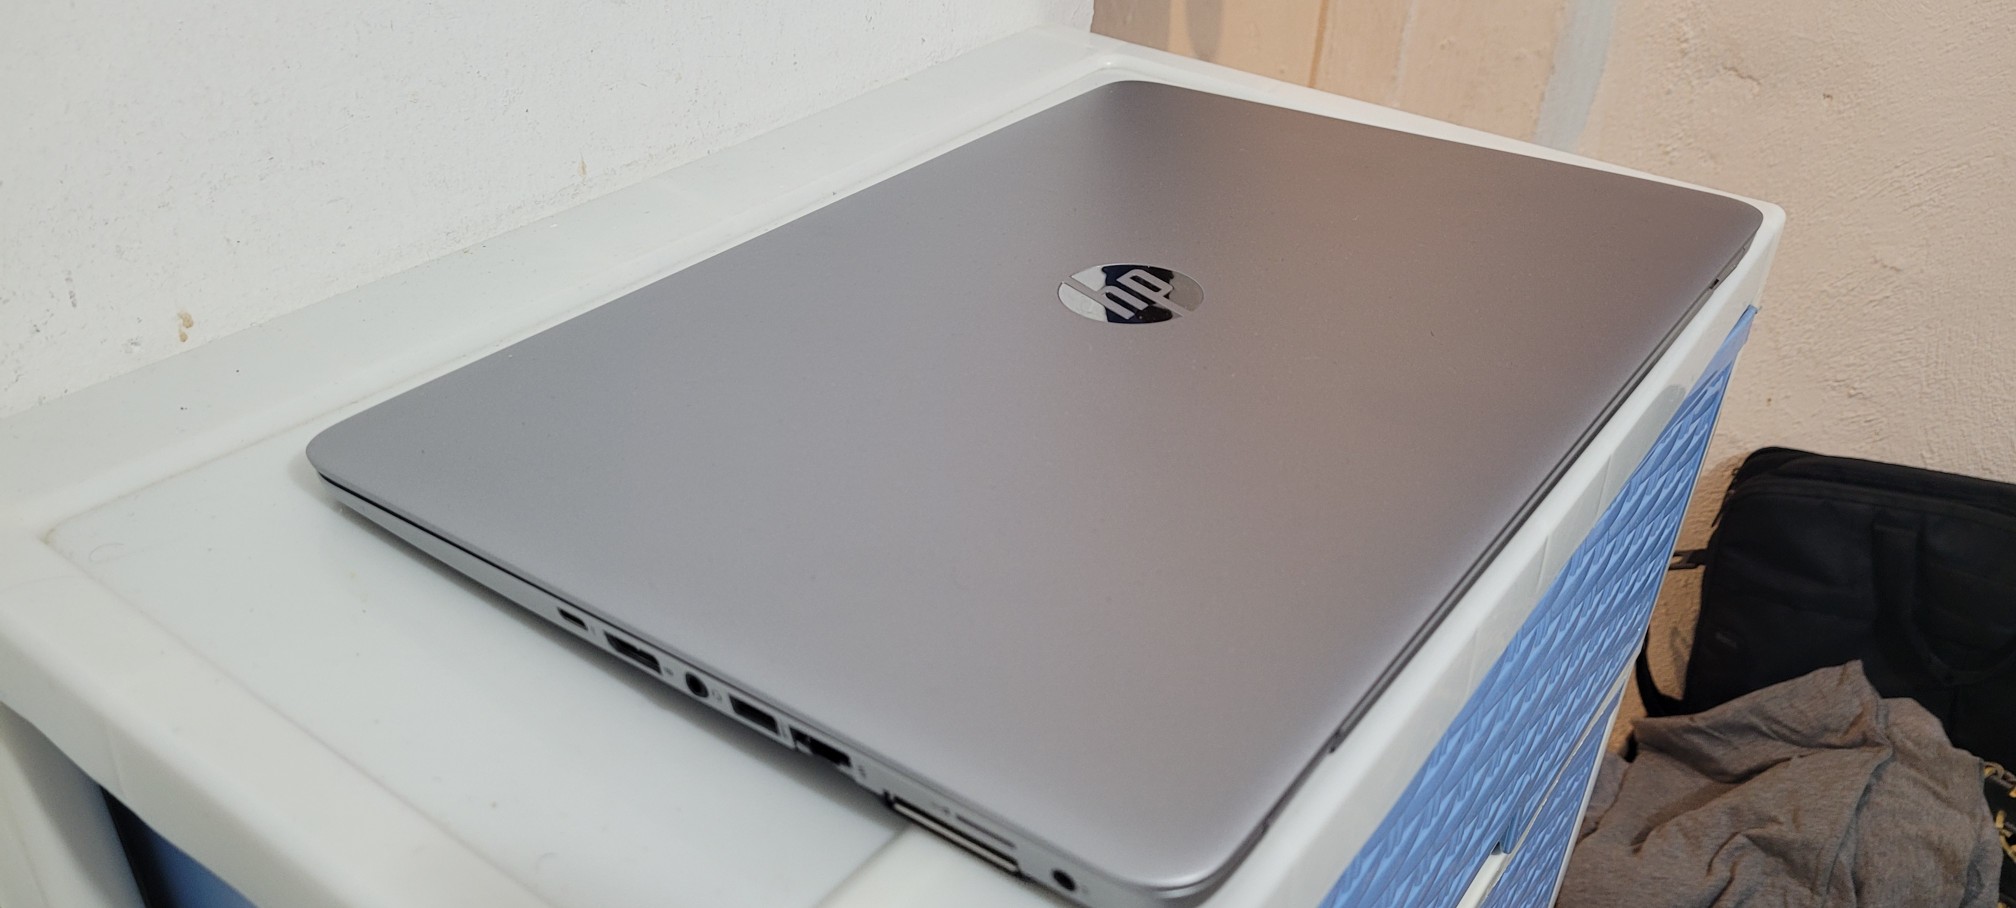 computadoras y laptops - Laptop hp G3 14 Pulg Core i5 6ta Ram 8gb ddr4 Disco 128gb SSD Y 320gb Wifi 2